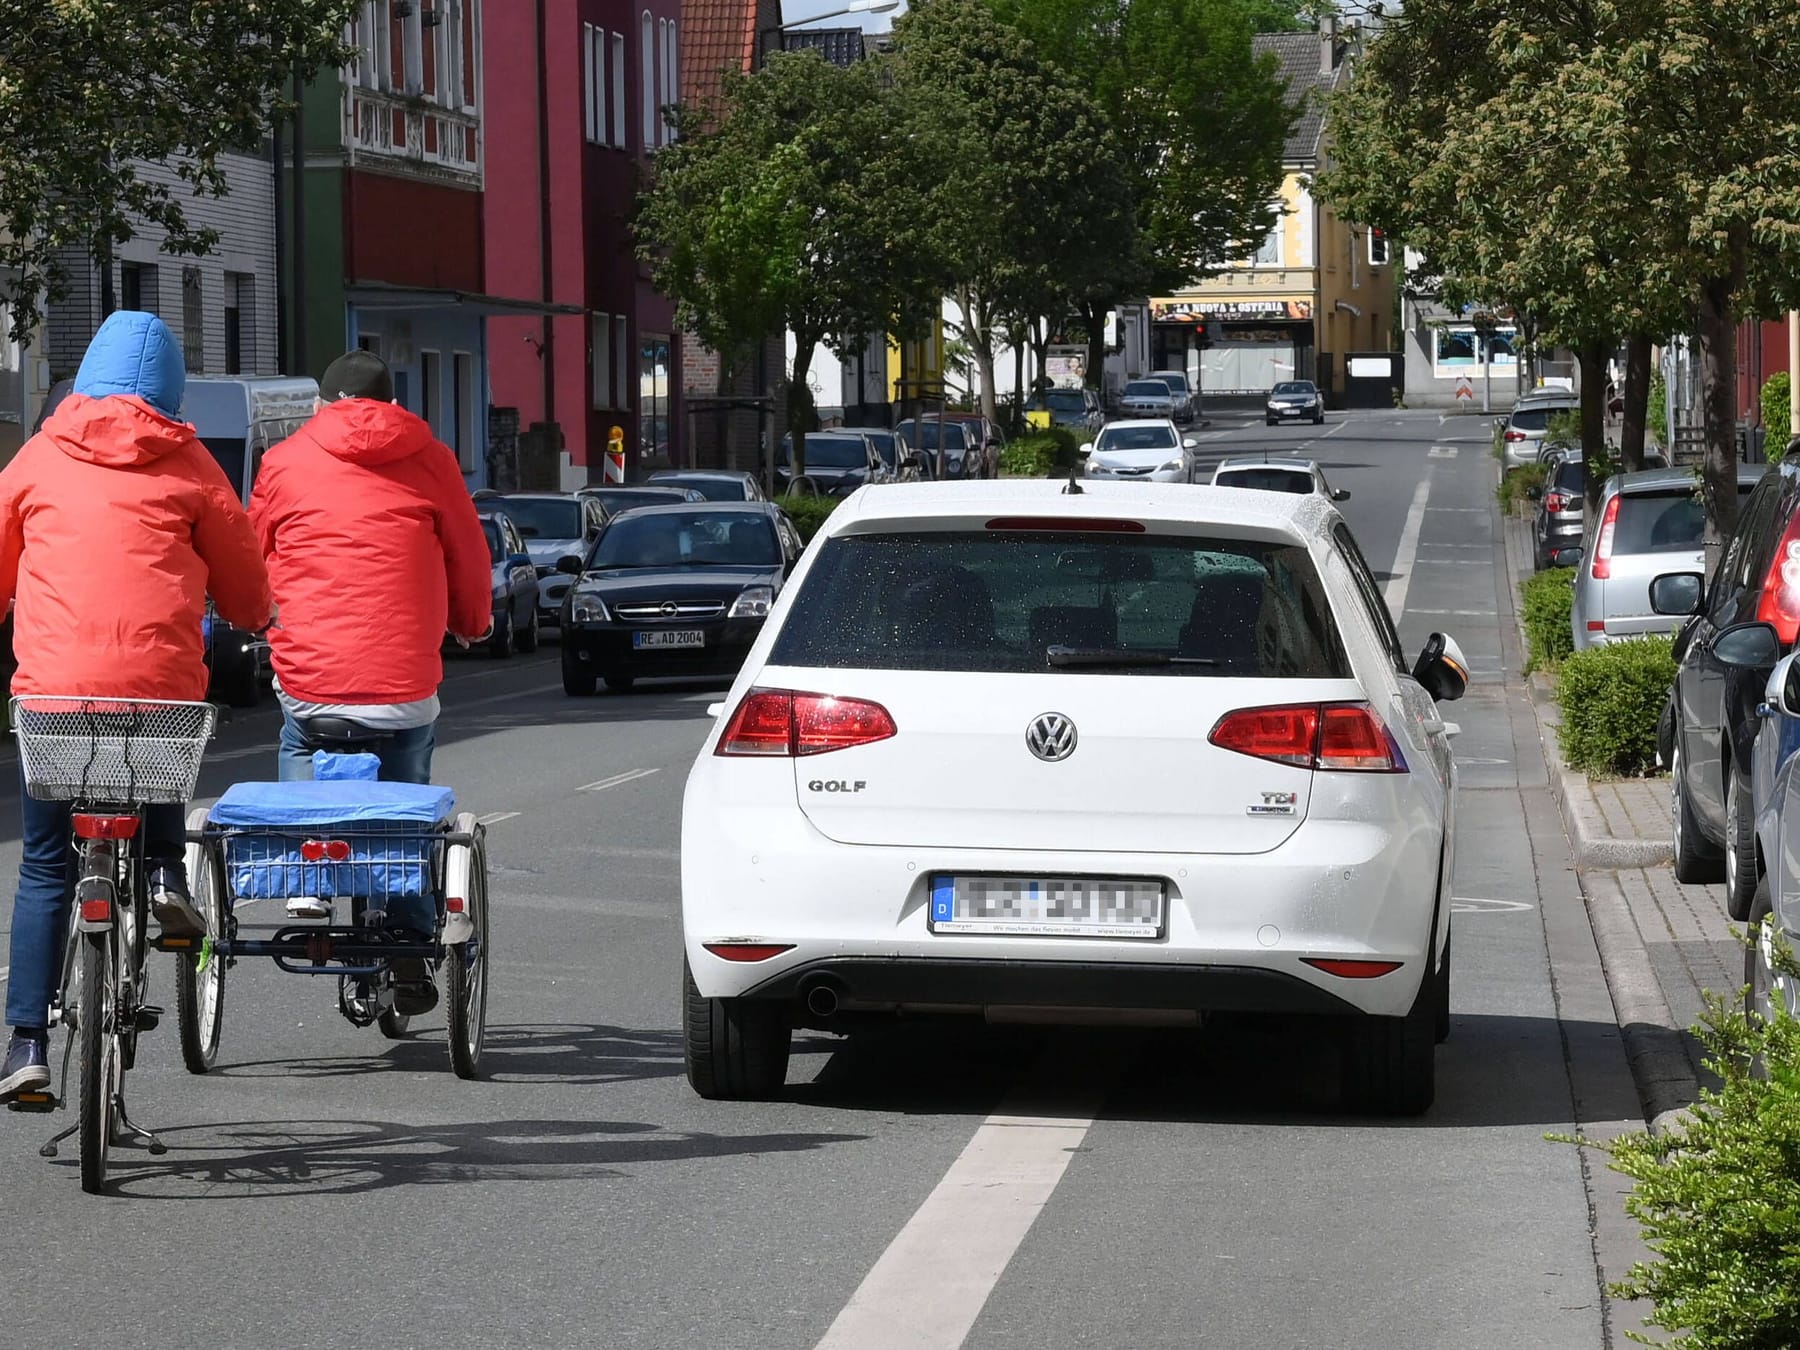 Schutzstreifen: Dürfen Autos auf dem Streifen für Radler fahren?